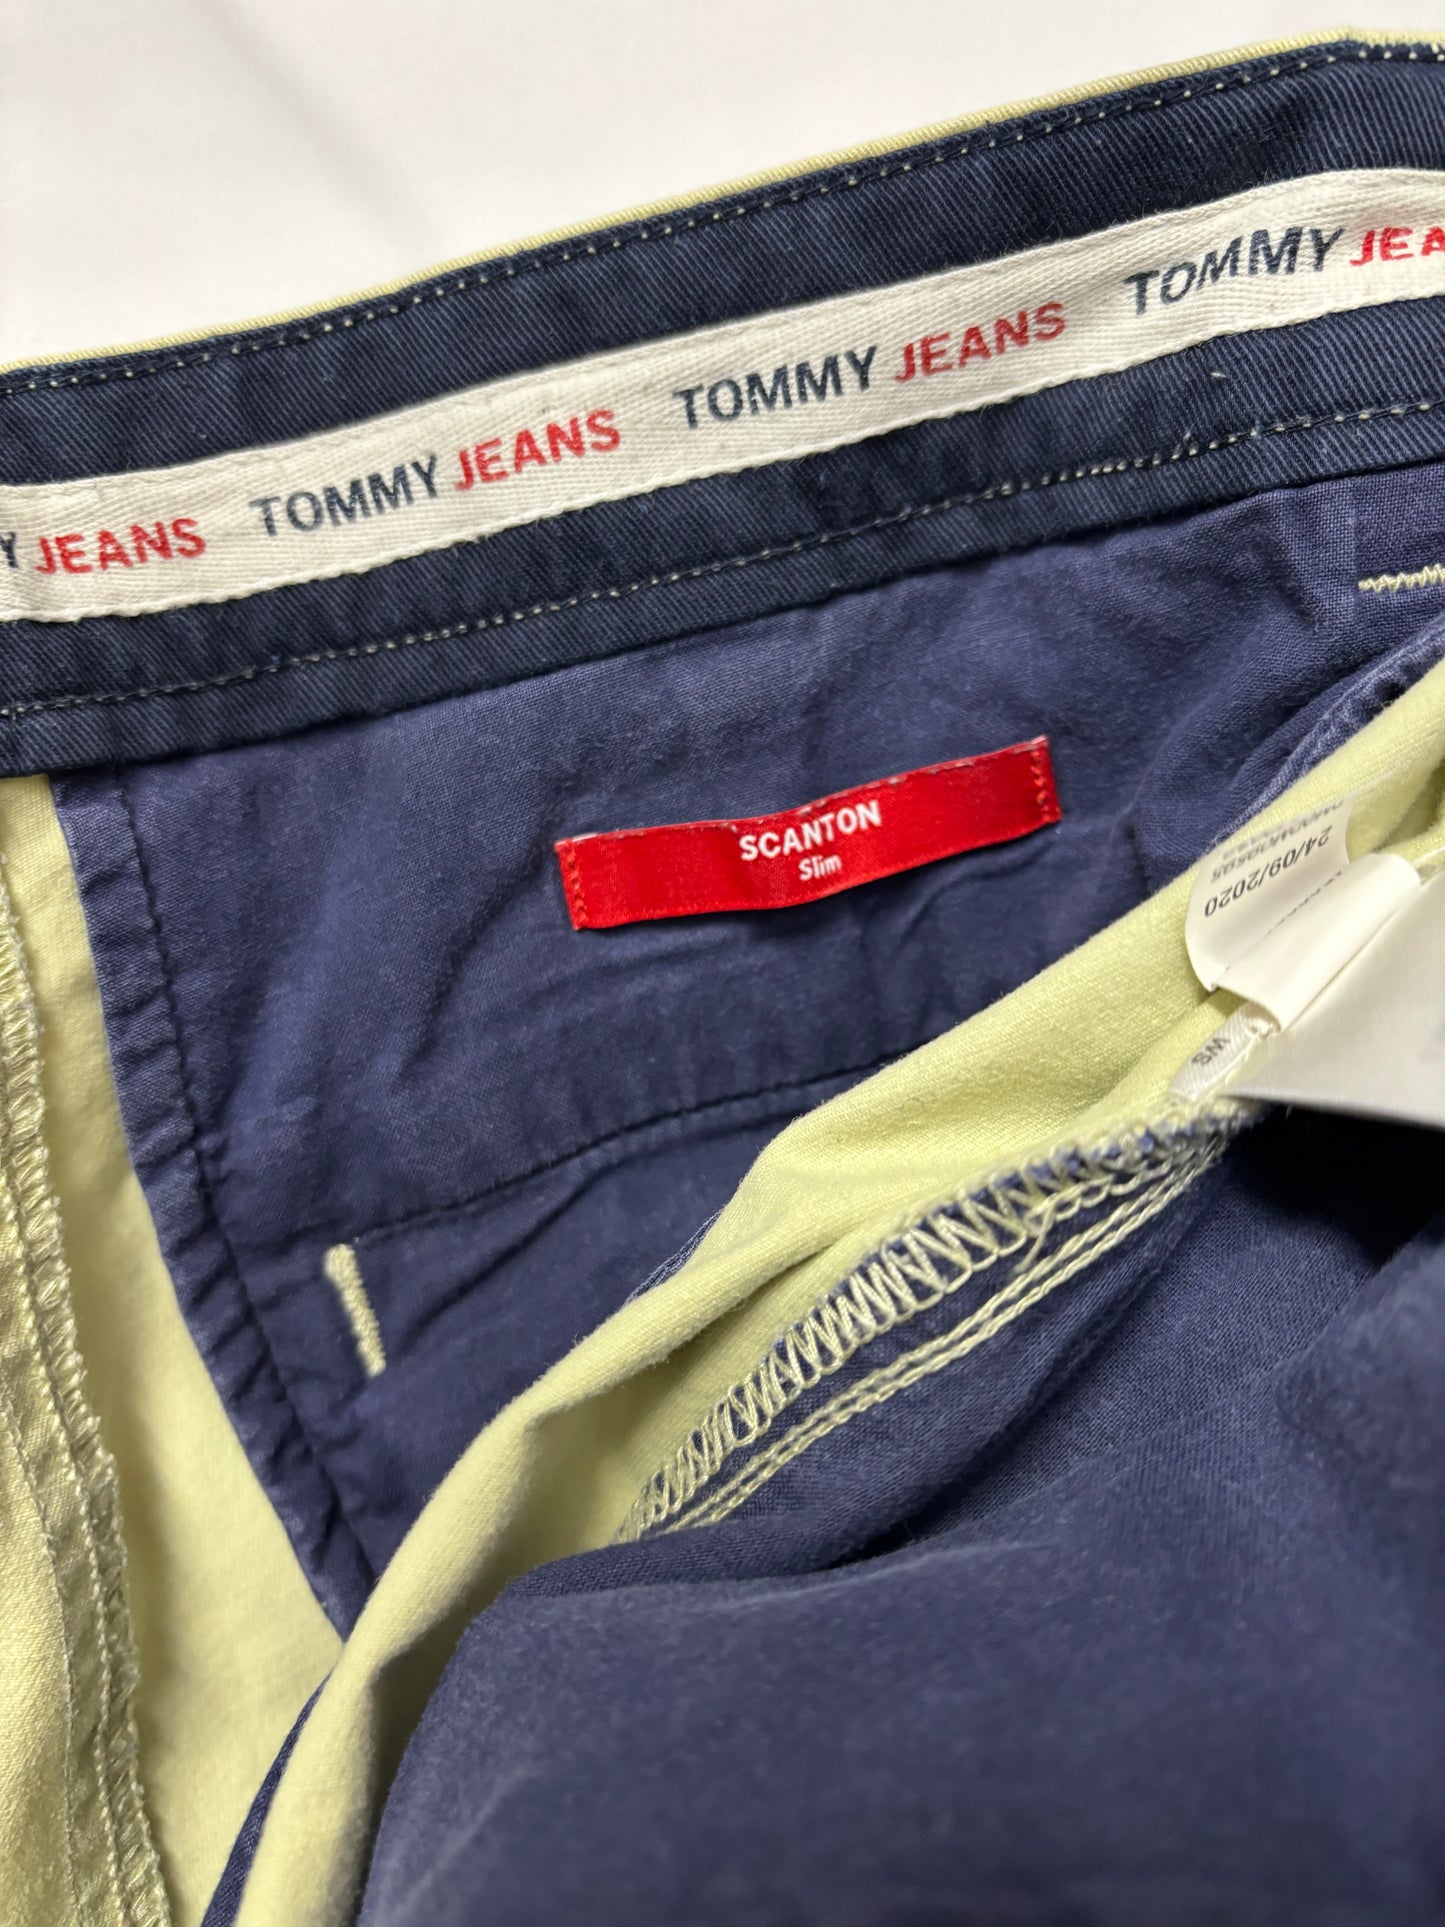 Tommy Jeans Beige Cotton Scanton Slim Chino 33x36